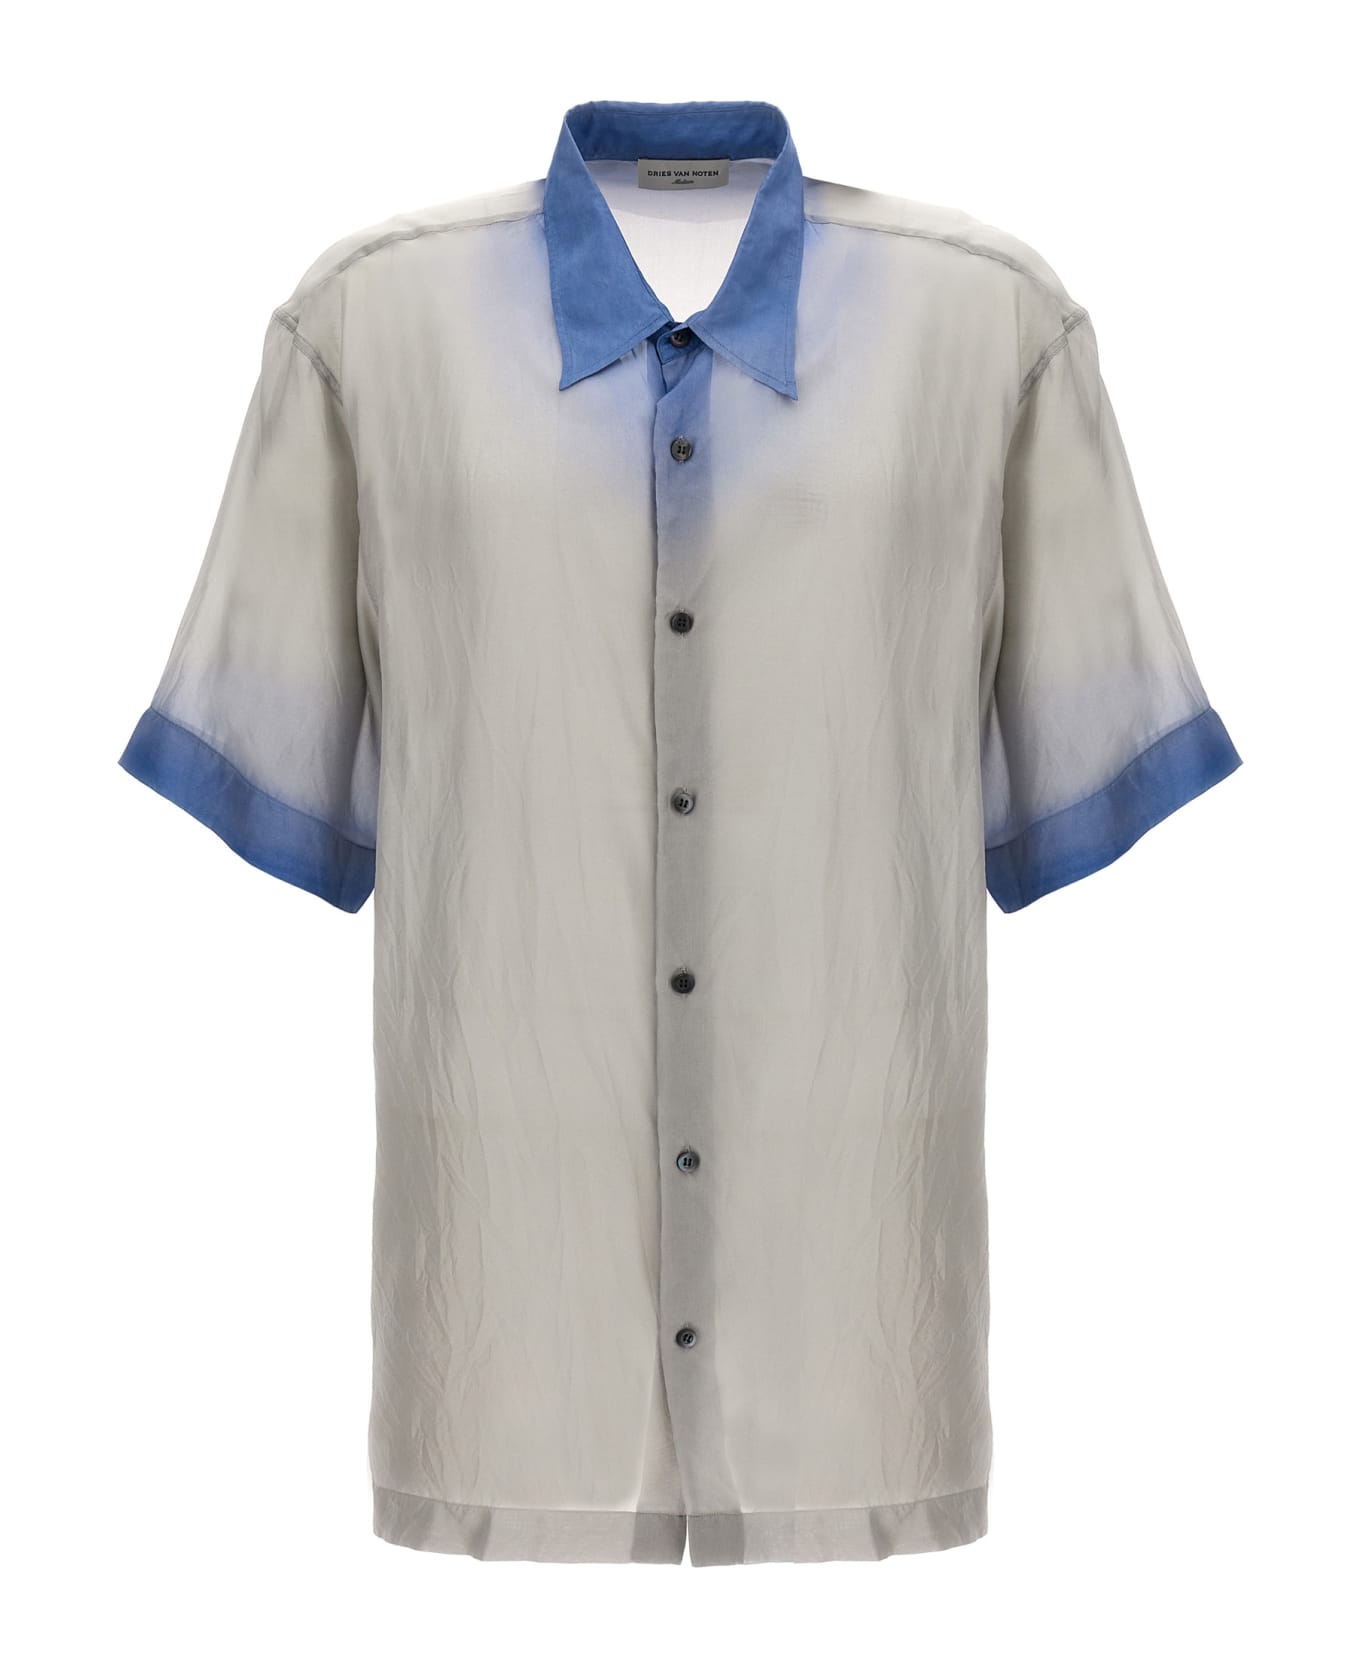 Dries Van Noten 'cassidye' Shirt - Light Blue